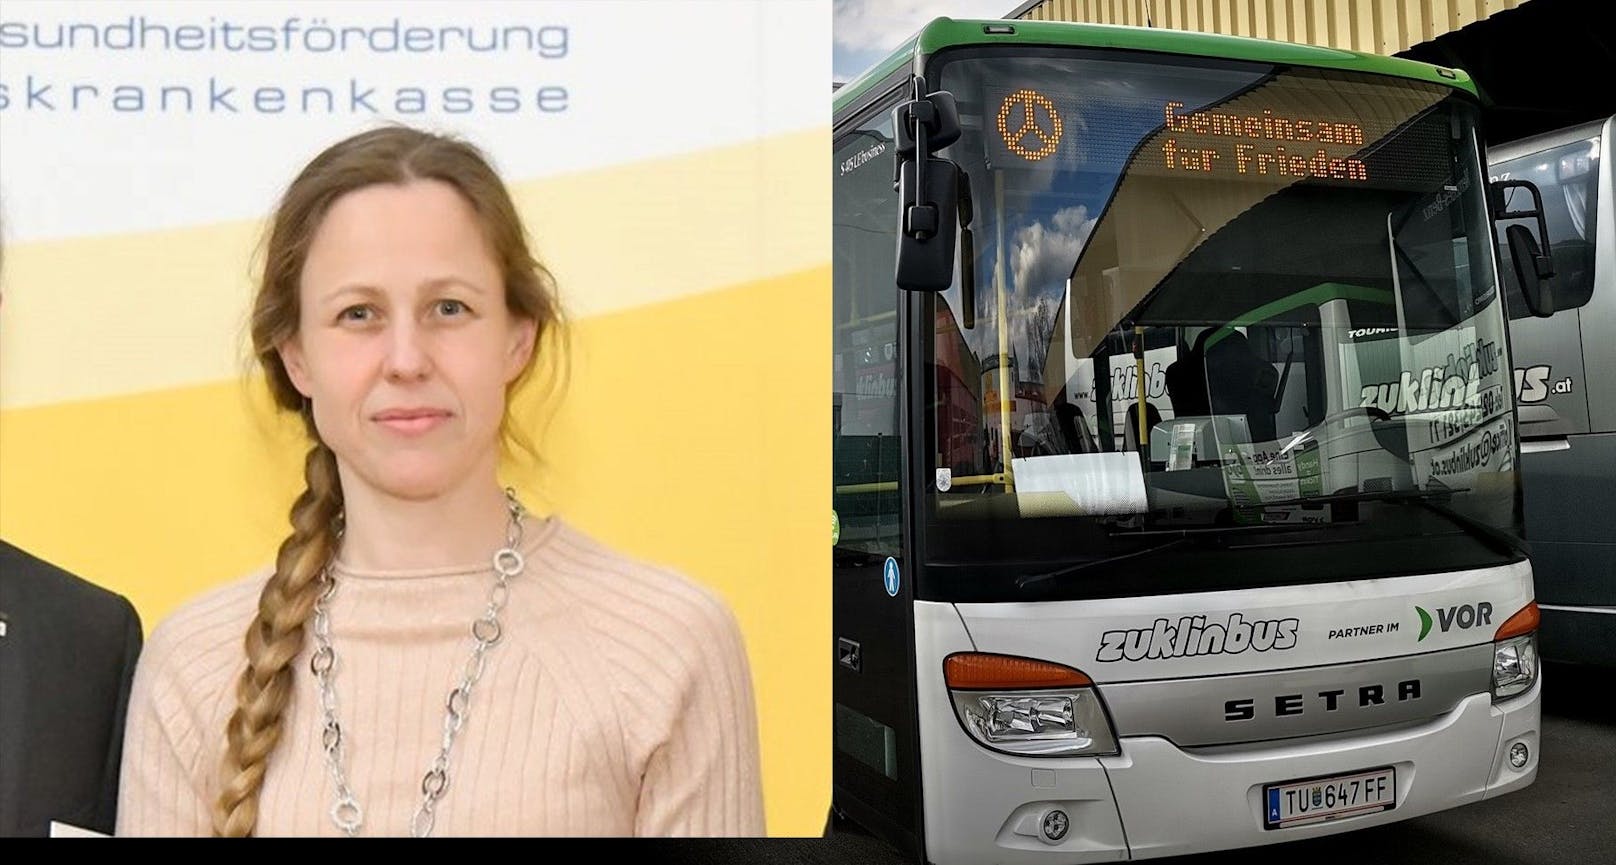 Sabine Zuklin hofft auf ein Ende der Pechsträhne: Zahlreiche Busfahrer wechselten zu anderen Unternehmen.